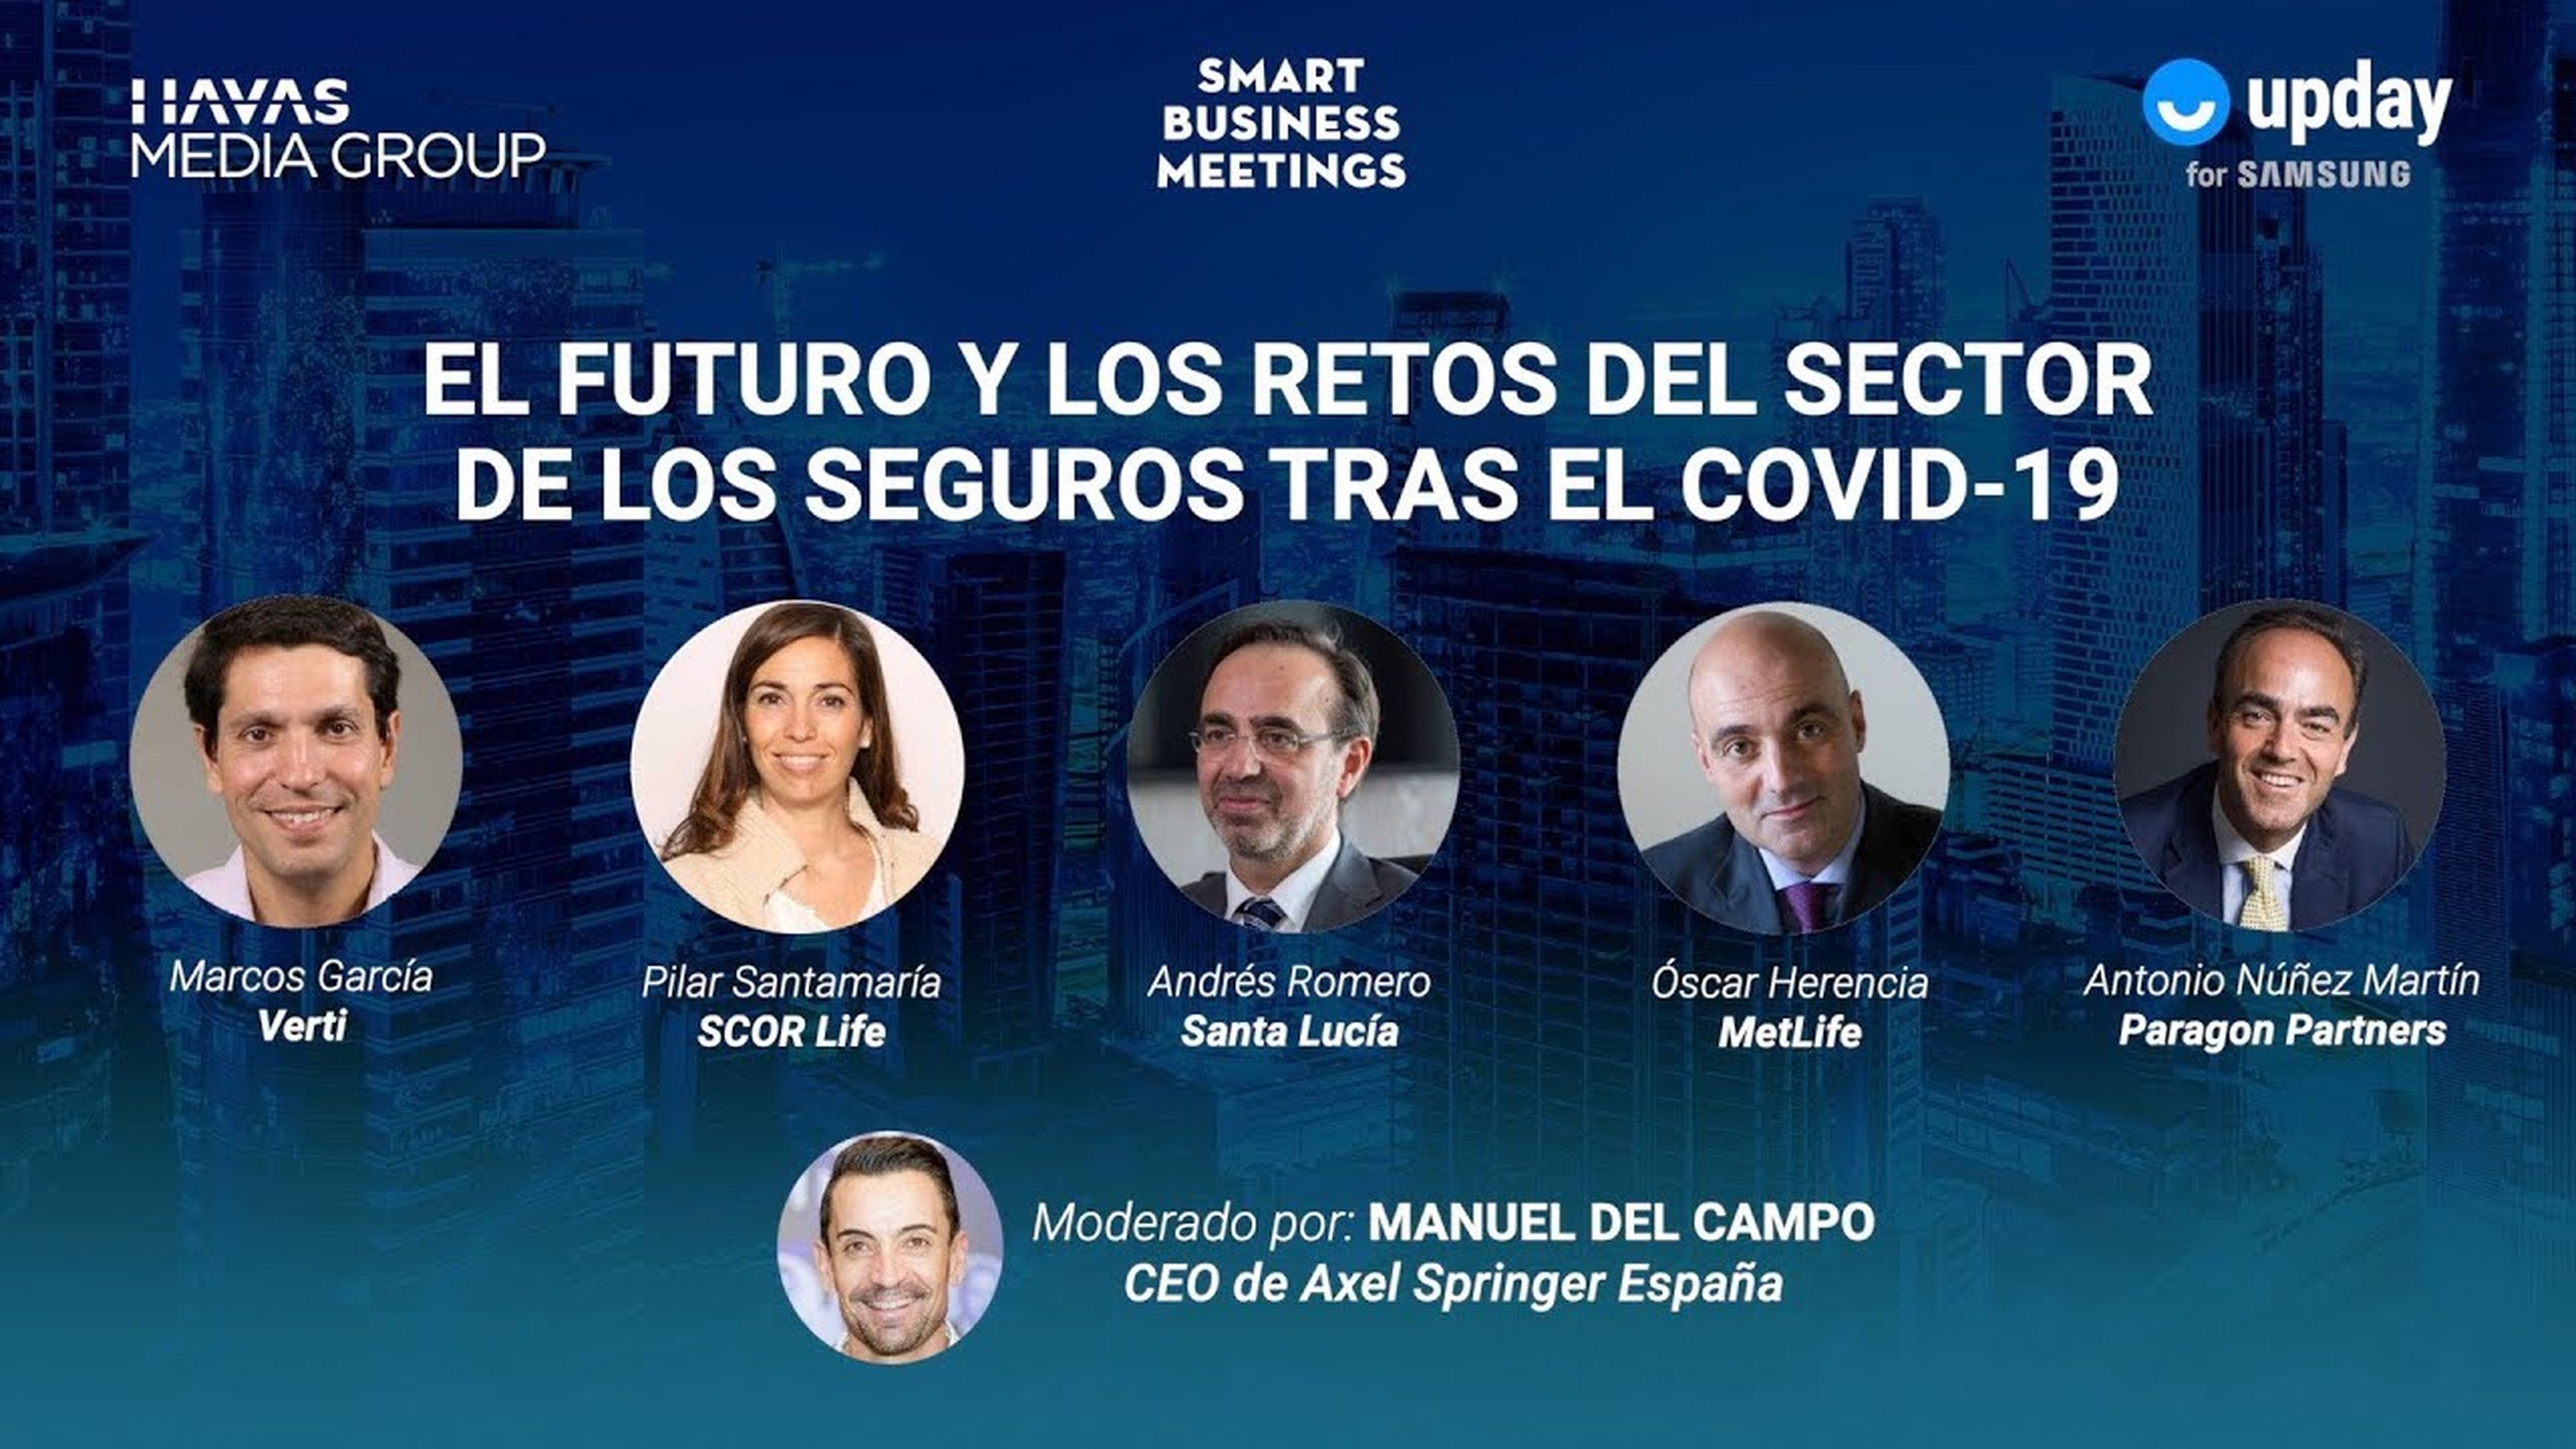 SMART BUSINESS MEETING: el futuro y los retos del sector de los seguros tras el COVID-19